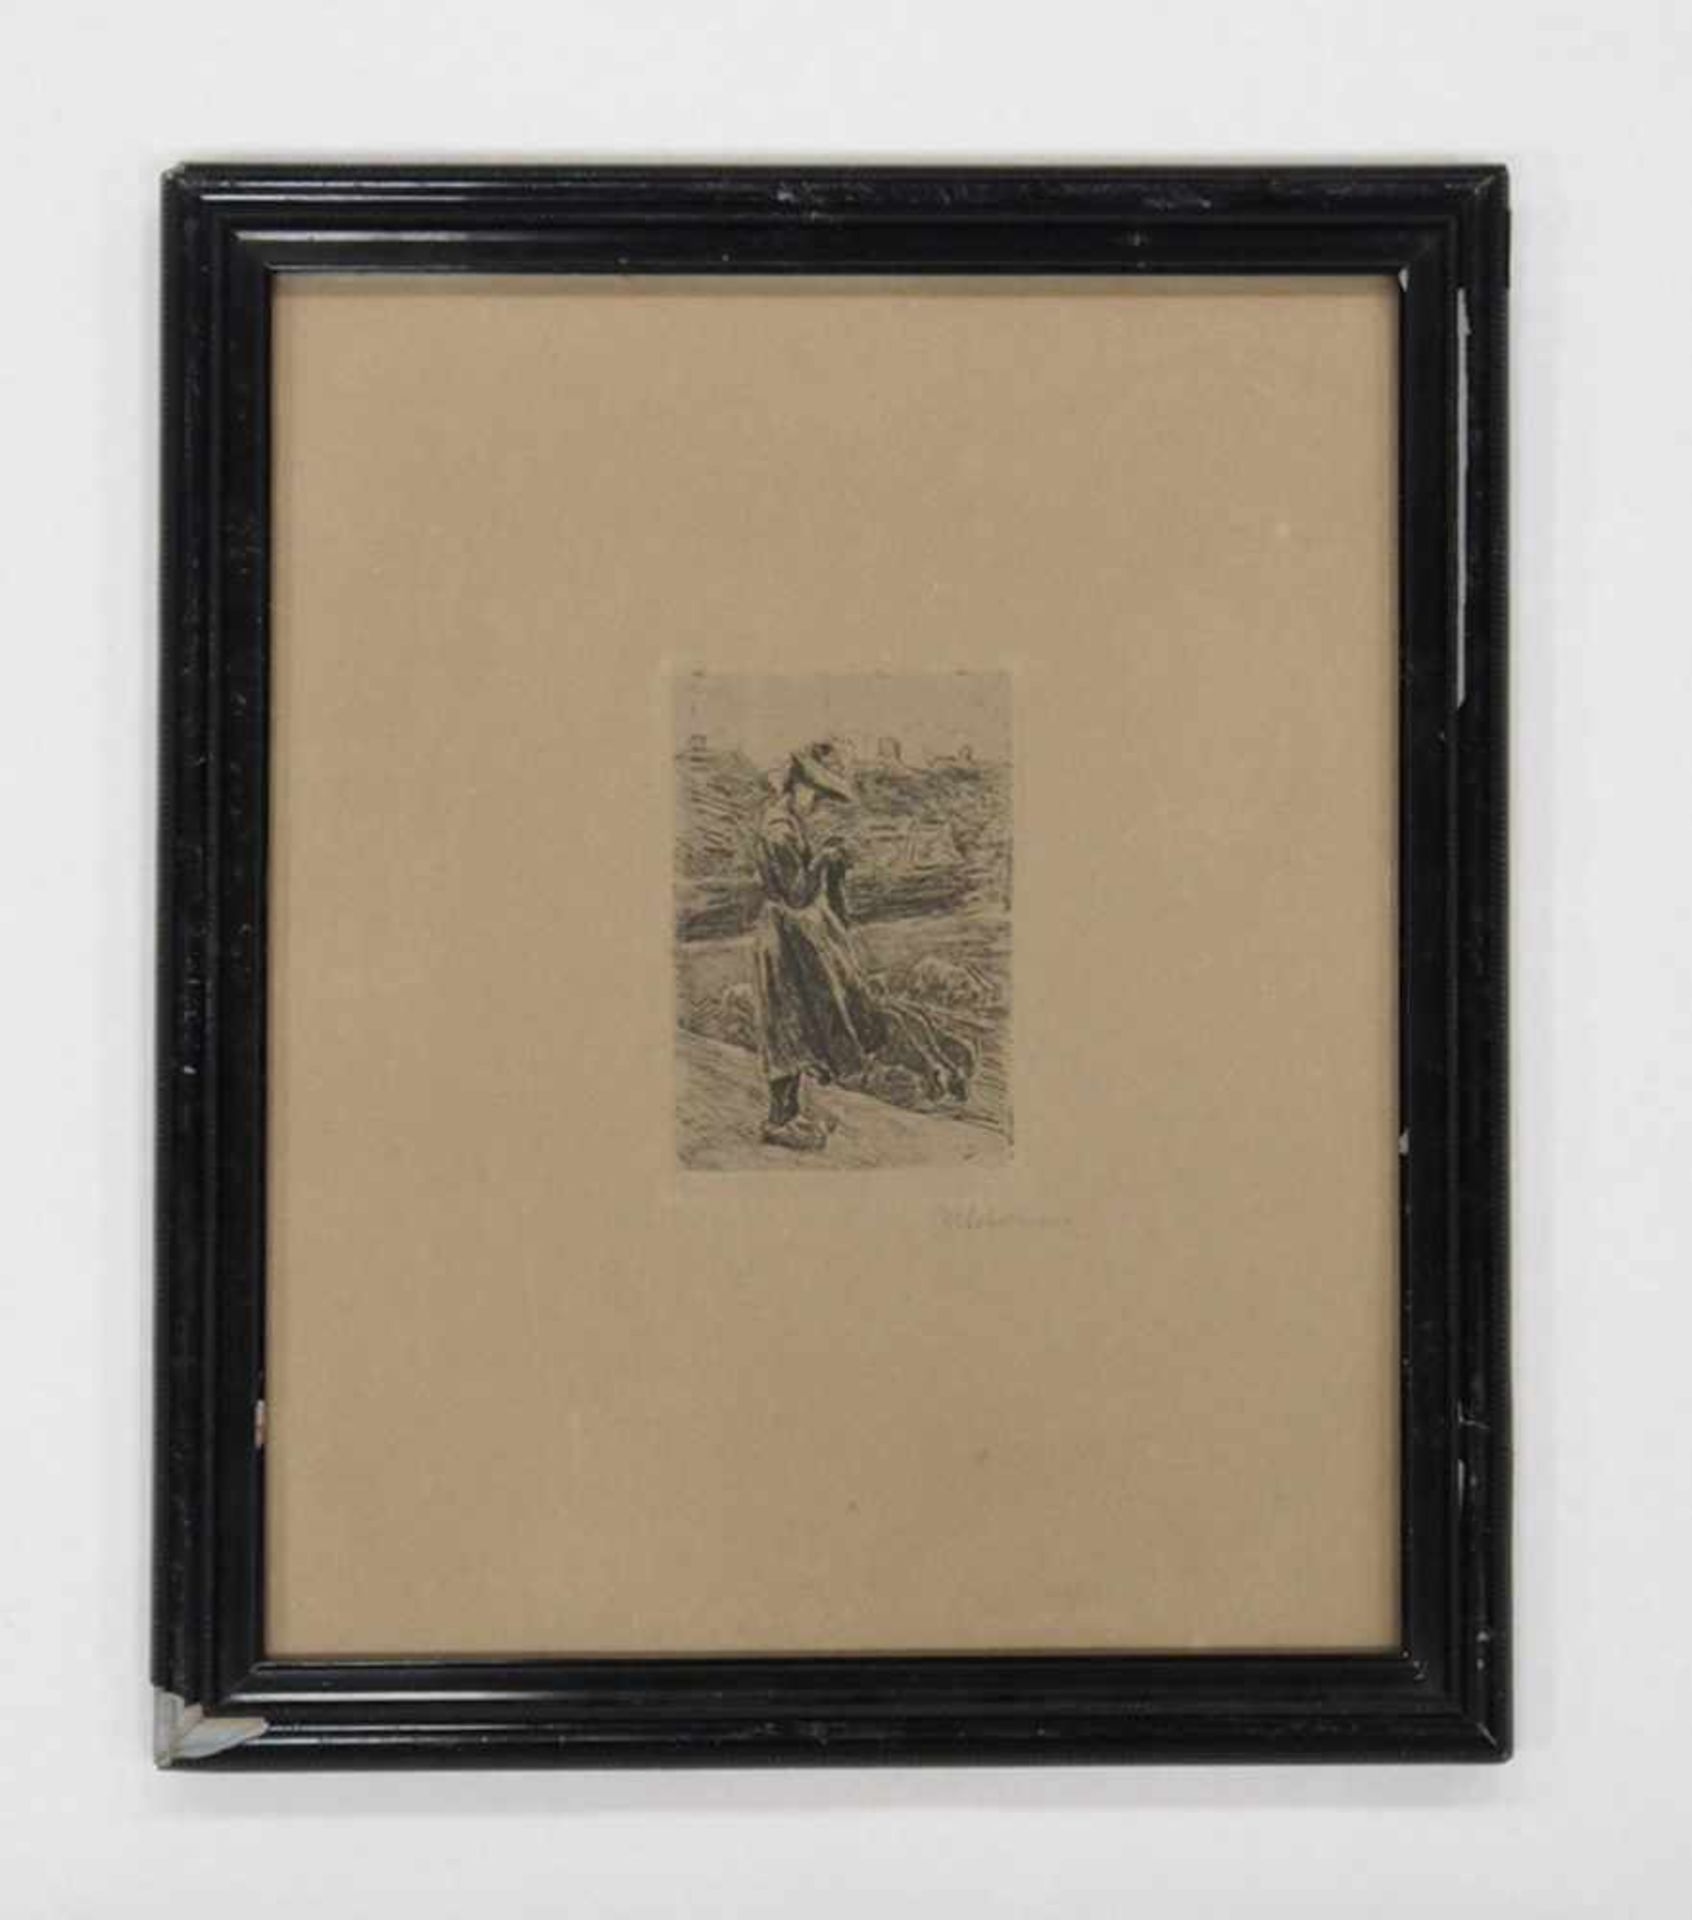 LIEBERMANN, Max1847-1935SchafhirtenRadierung, signiert unten rechts, 31 x 25 cm, gerahmt unter Glas- - Bild 2 aus 2